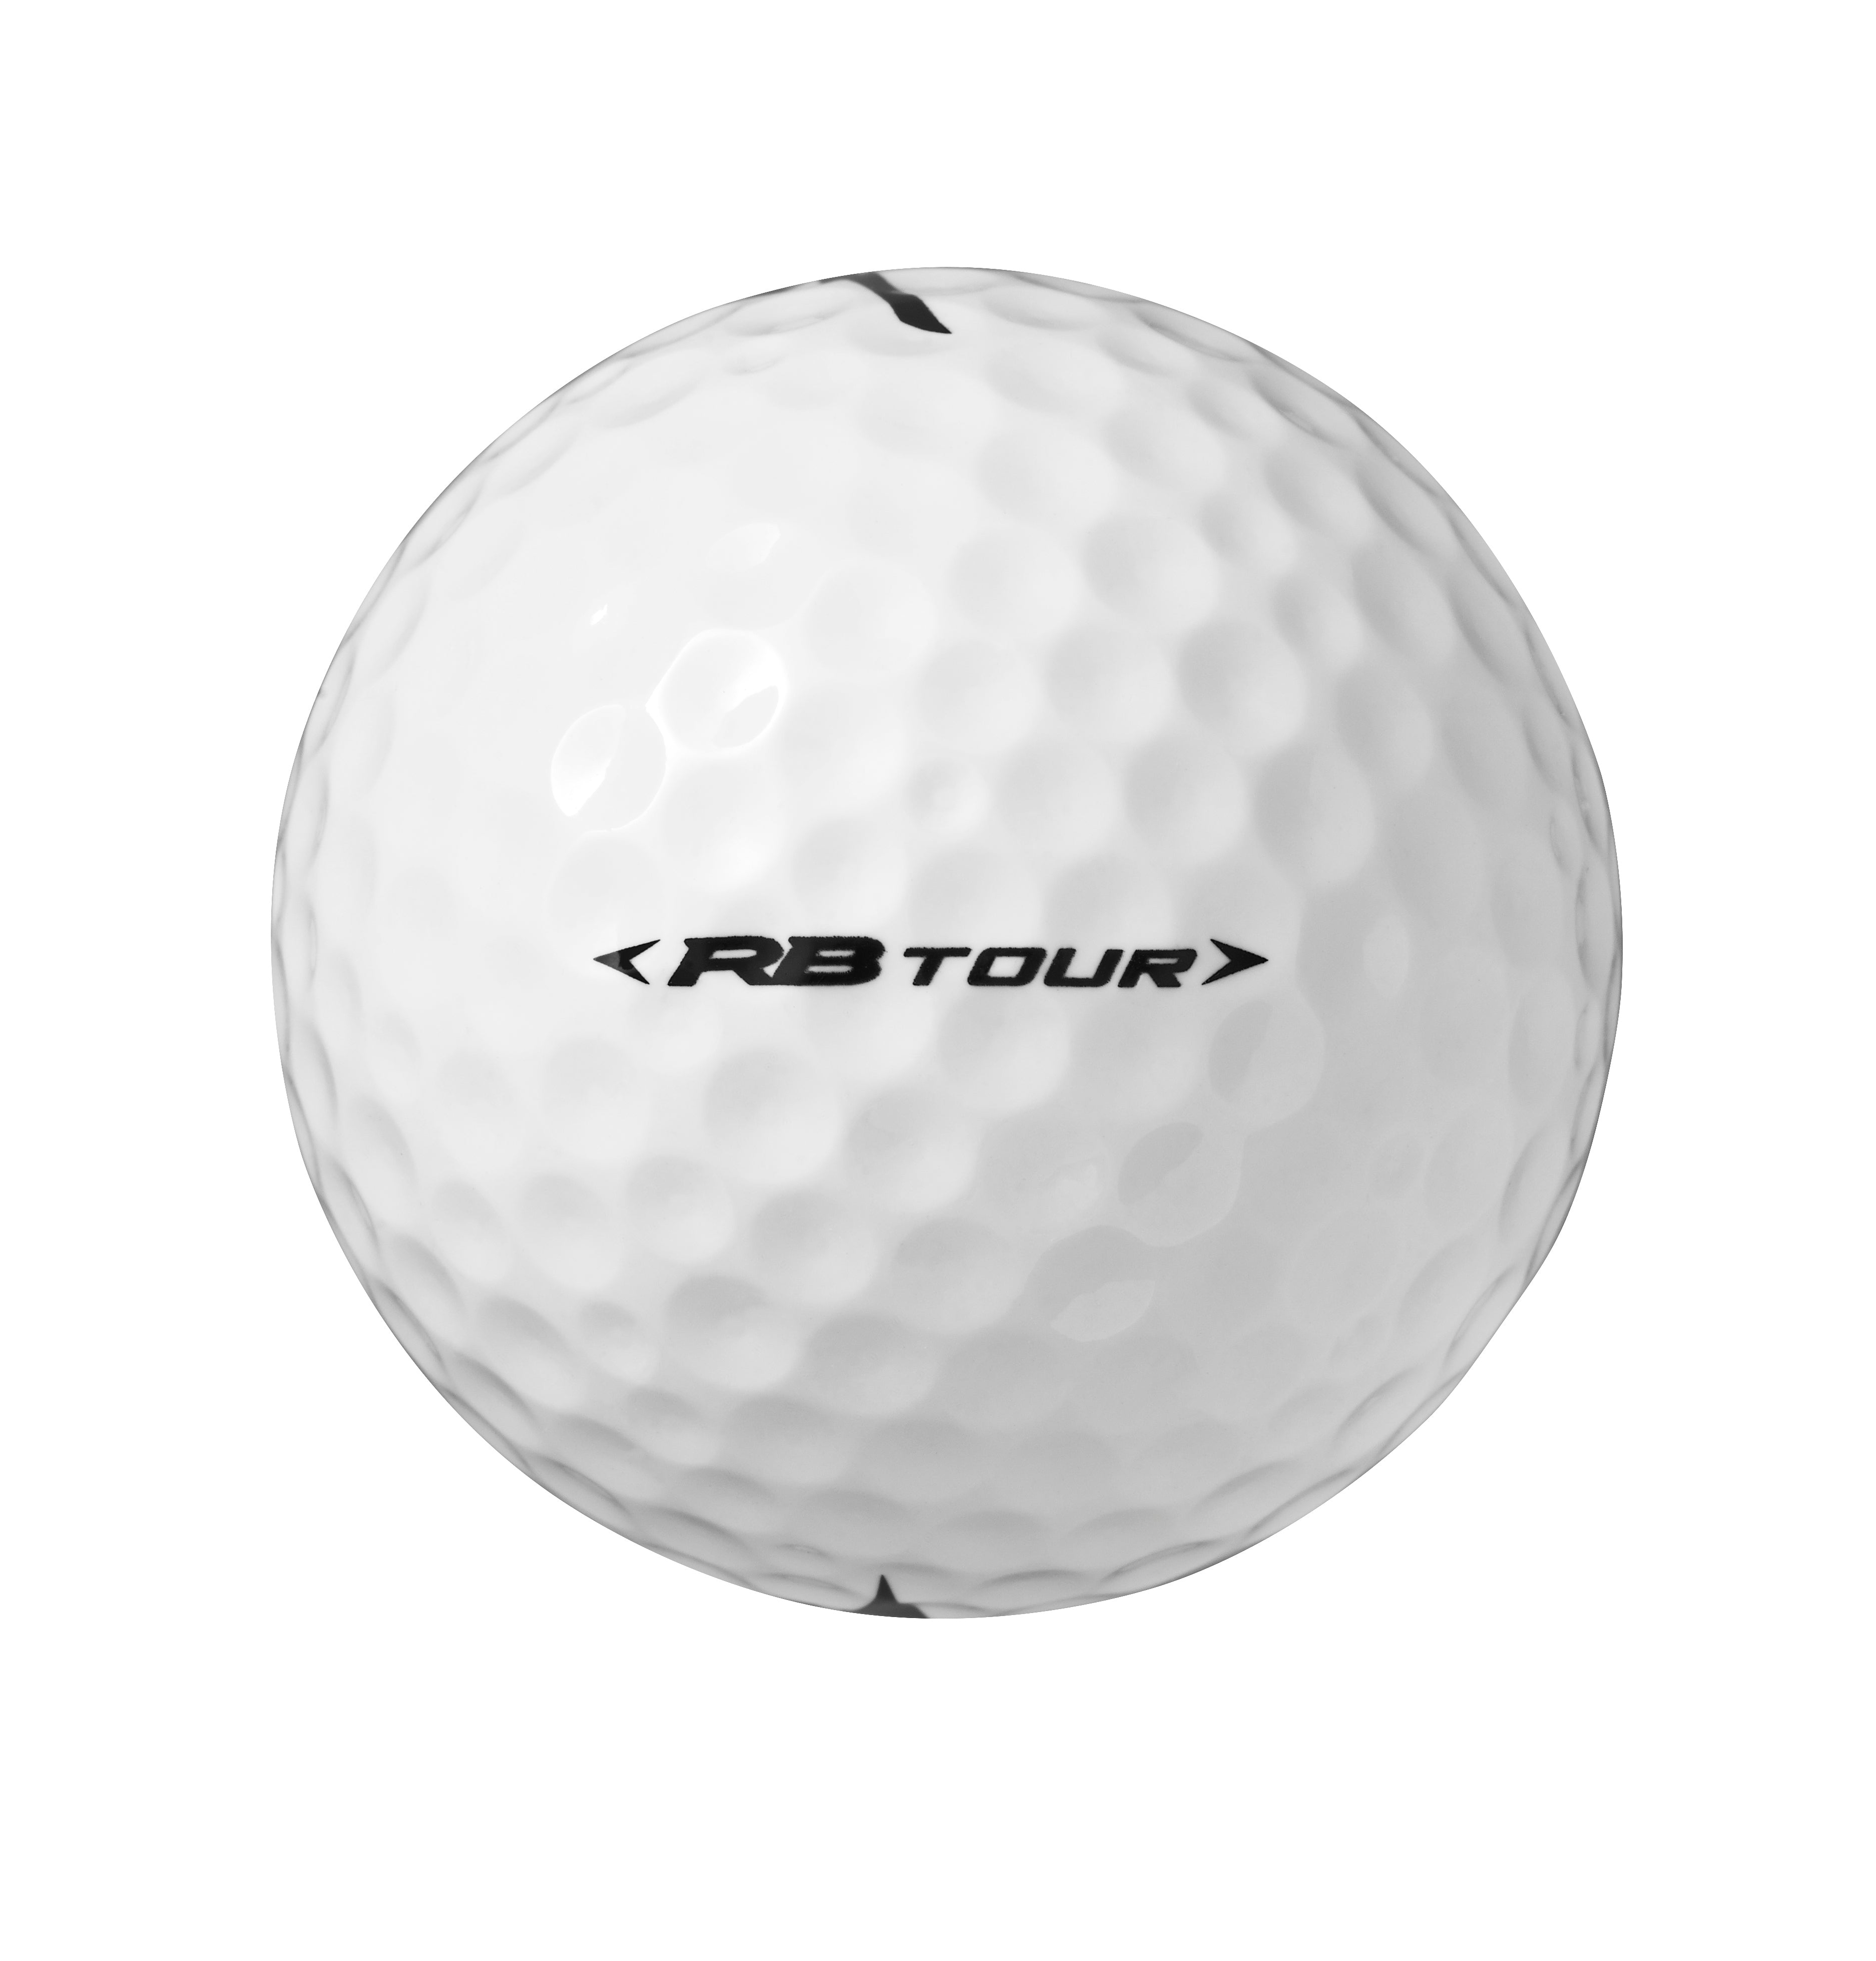 White 'RB Tour' Golf Ball - 12 Pack /  2020